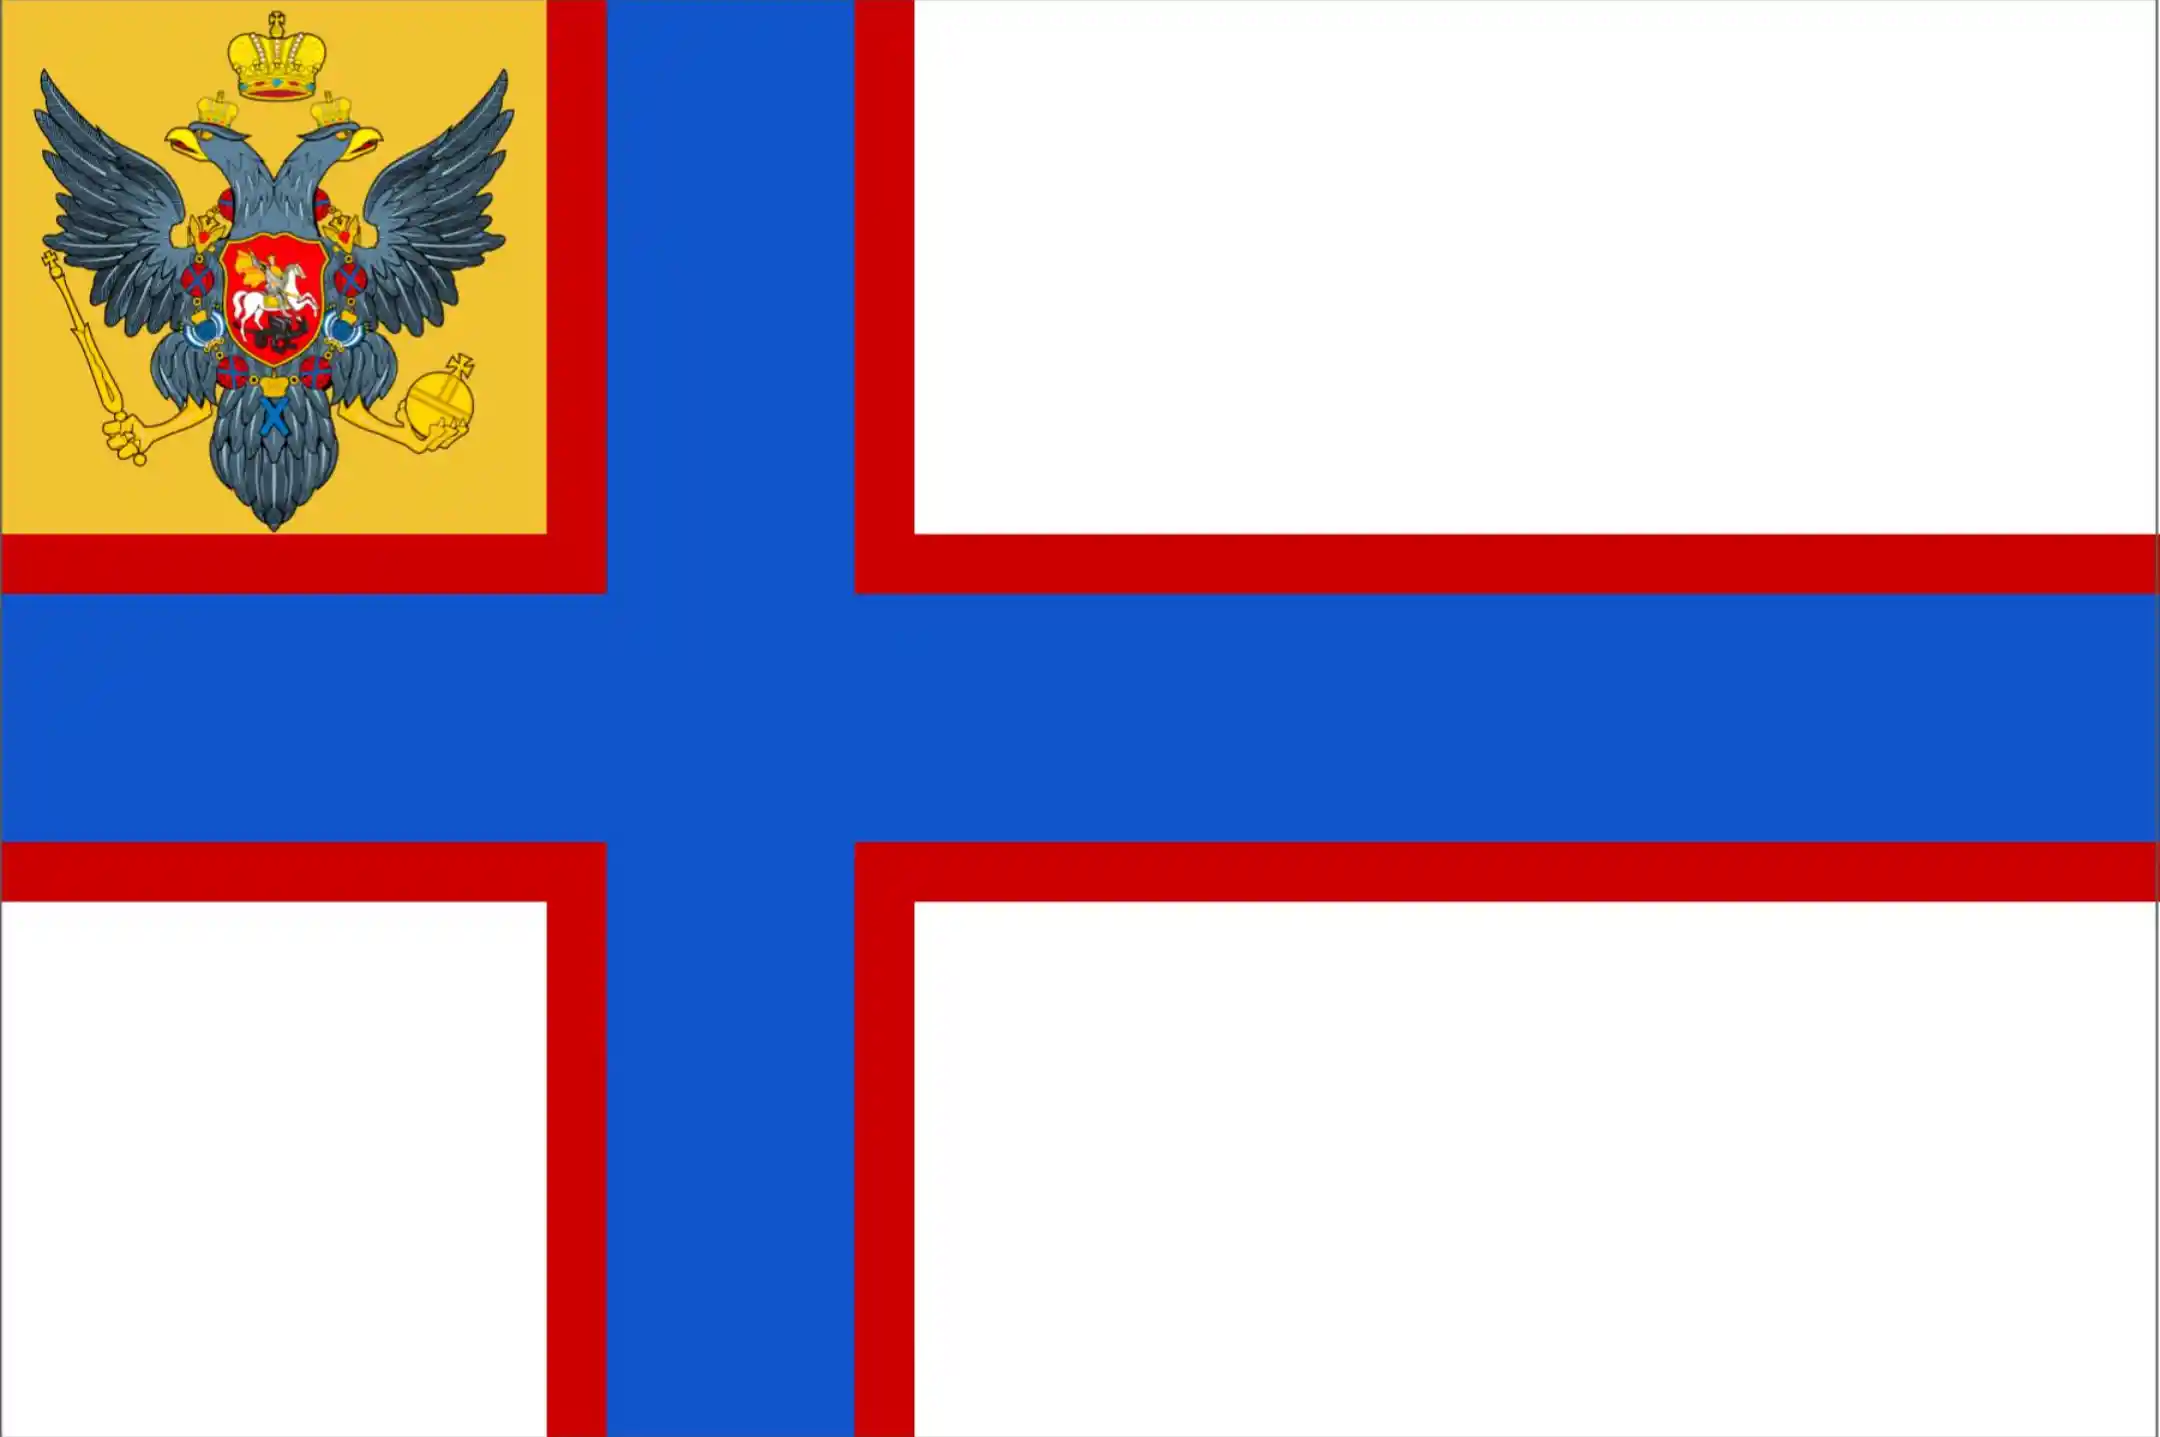 セロヴァルシャ帝国国旗_0.jpg